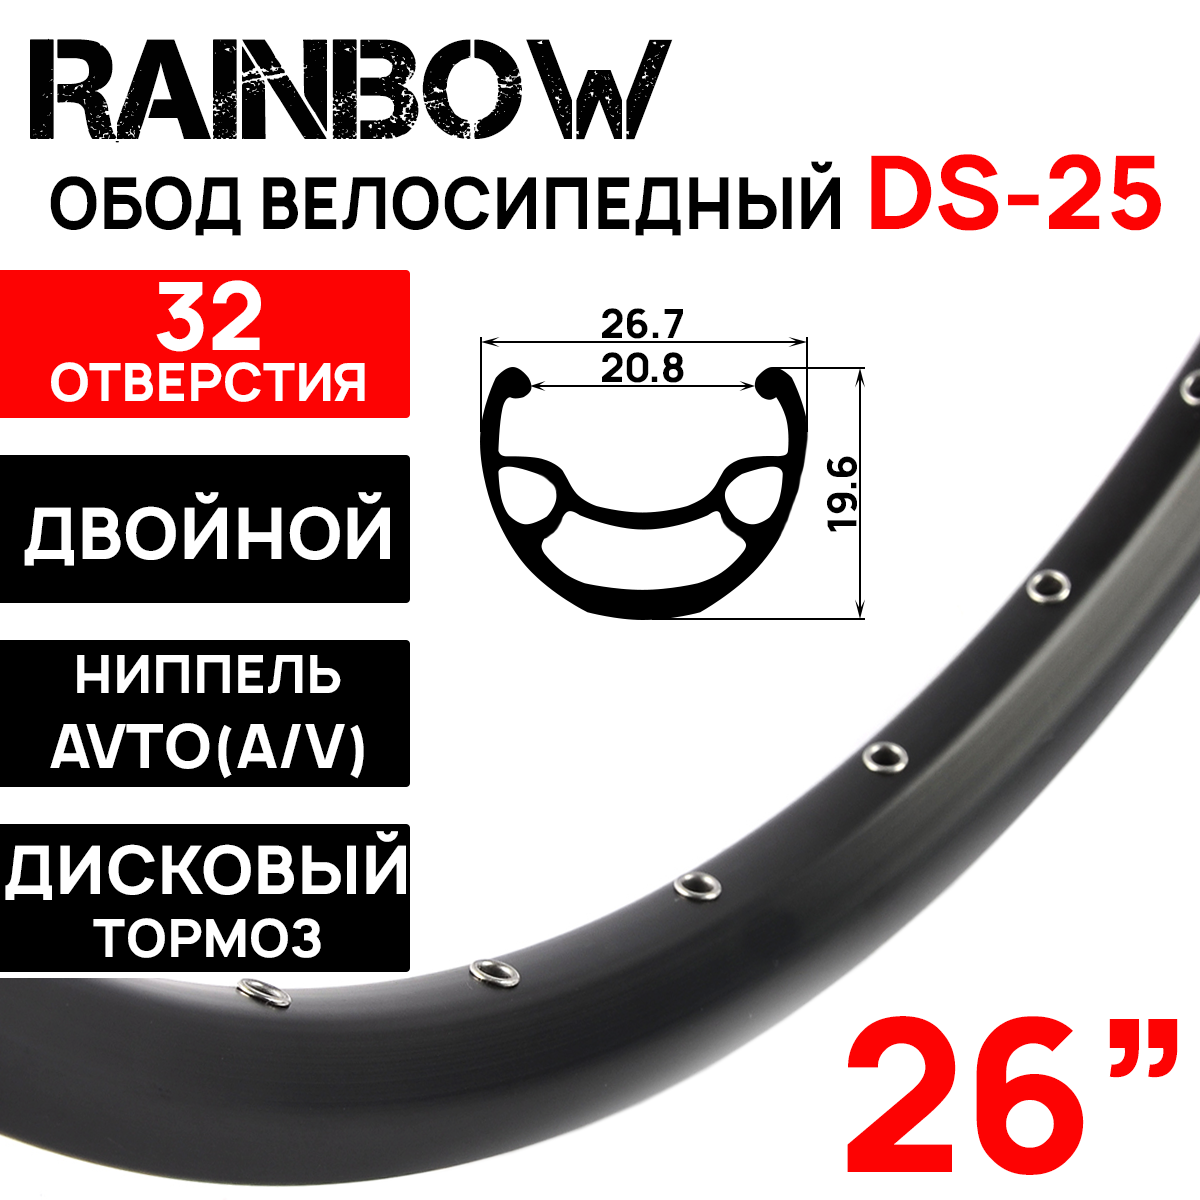 Обод Rainbow DS-25, 26" (559x20.8х26.7x19.6мм) двойной, пистонированный, под дисковый тормоз, 32 отверстия, A/V, ниппель, цвет черный